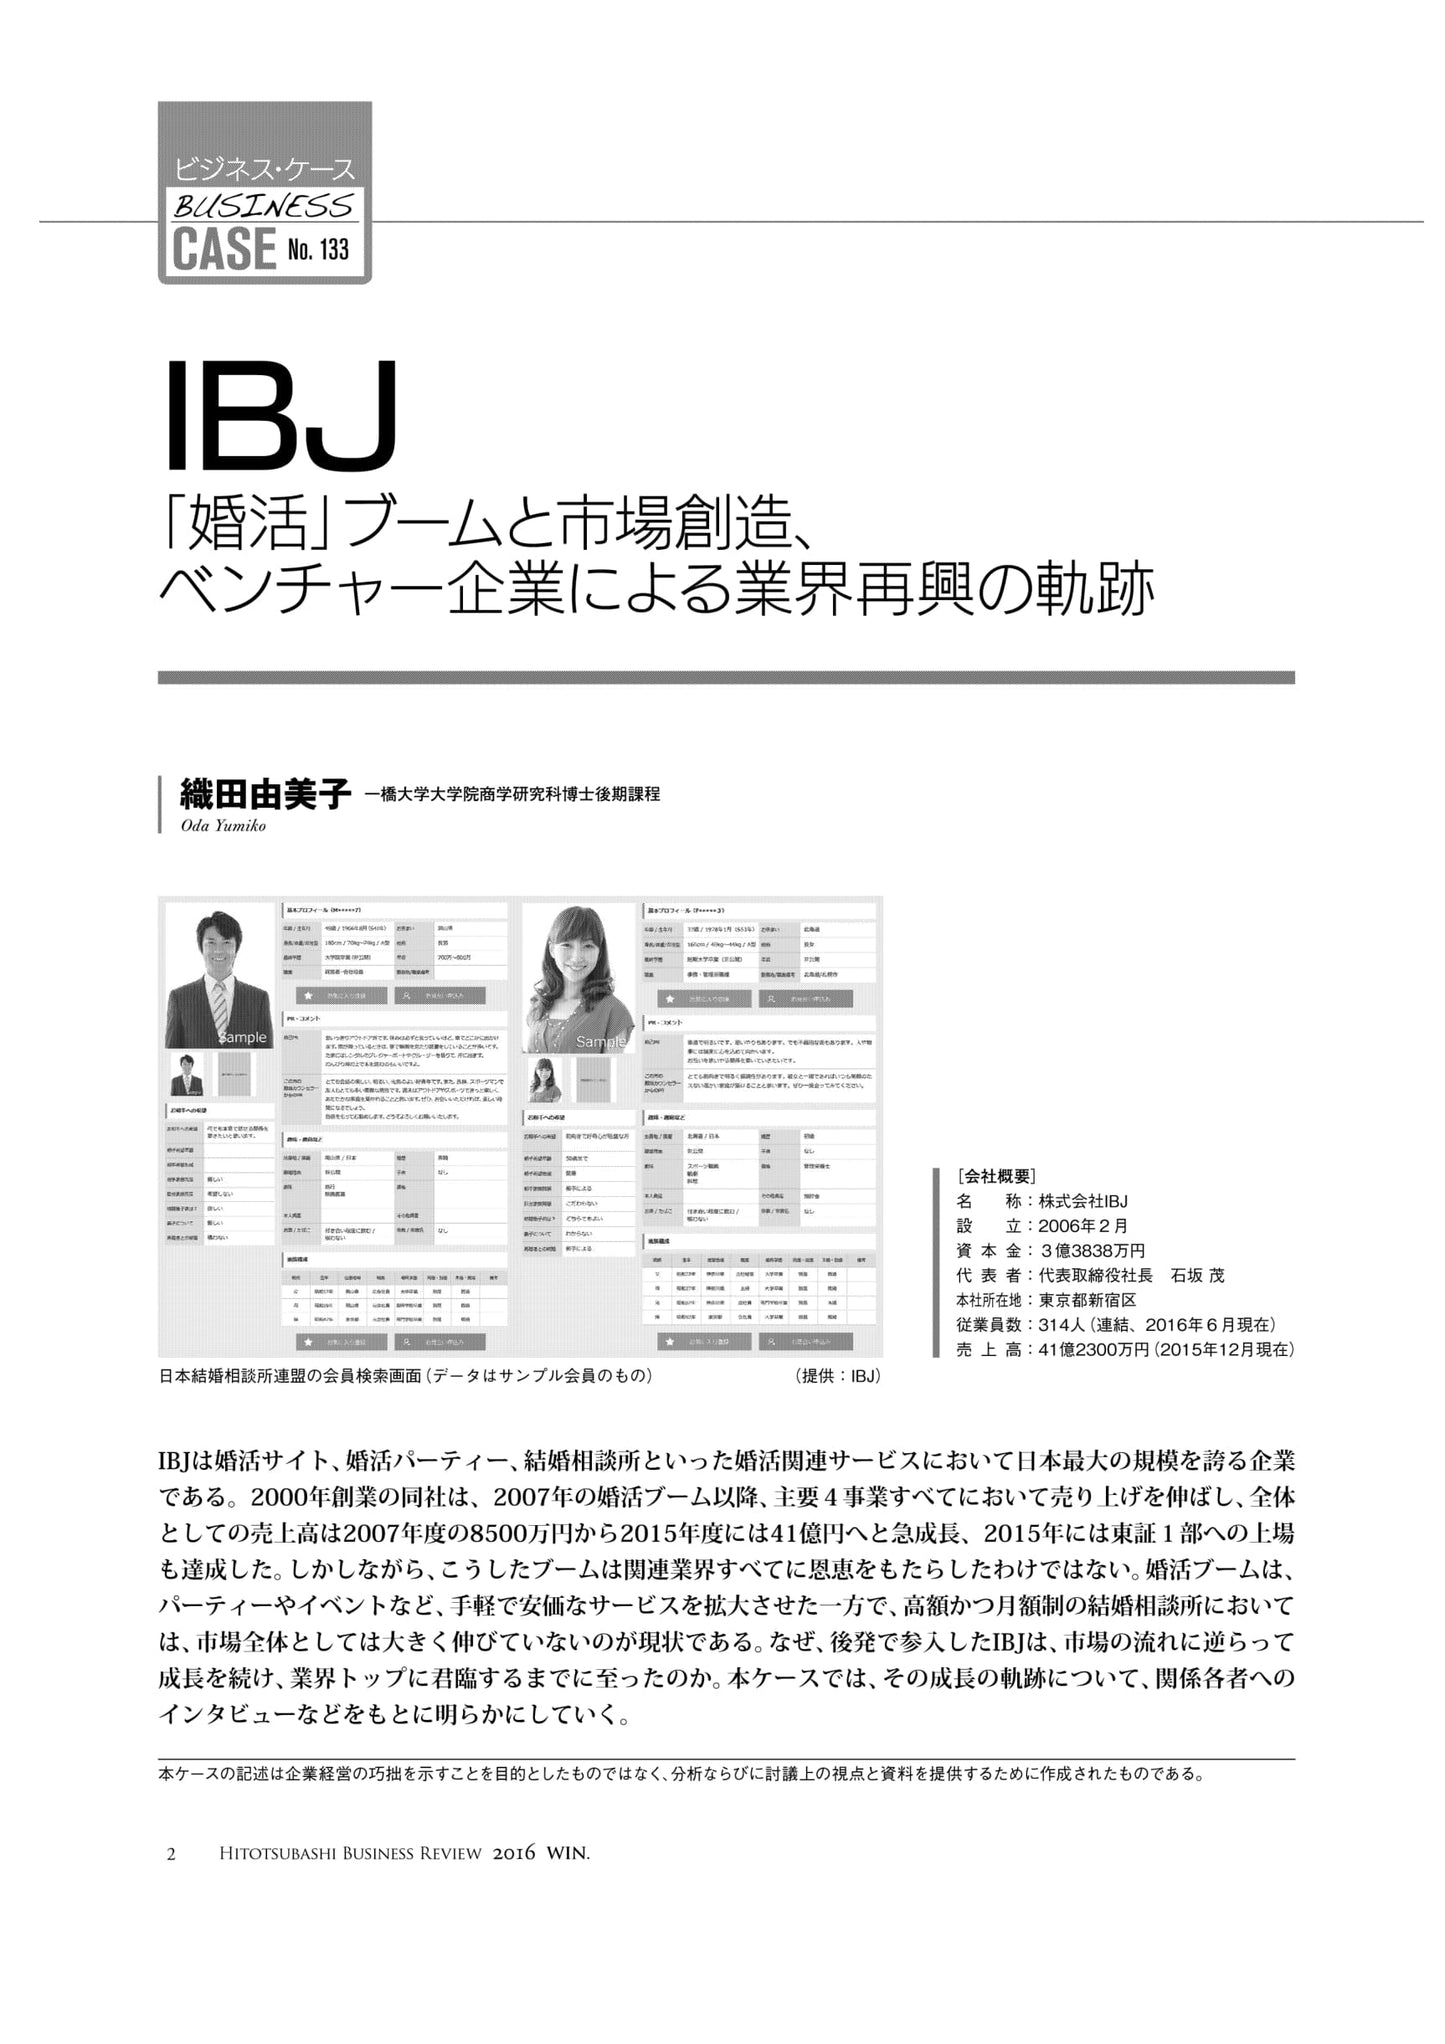 IBJ : 「婚活」ブームと市場創造、ベンチャー企業による業界再興の軌跡